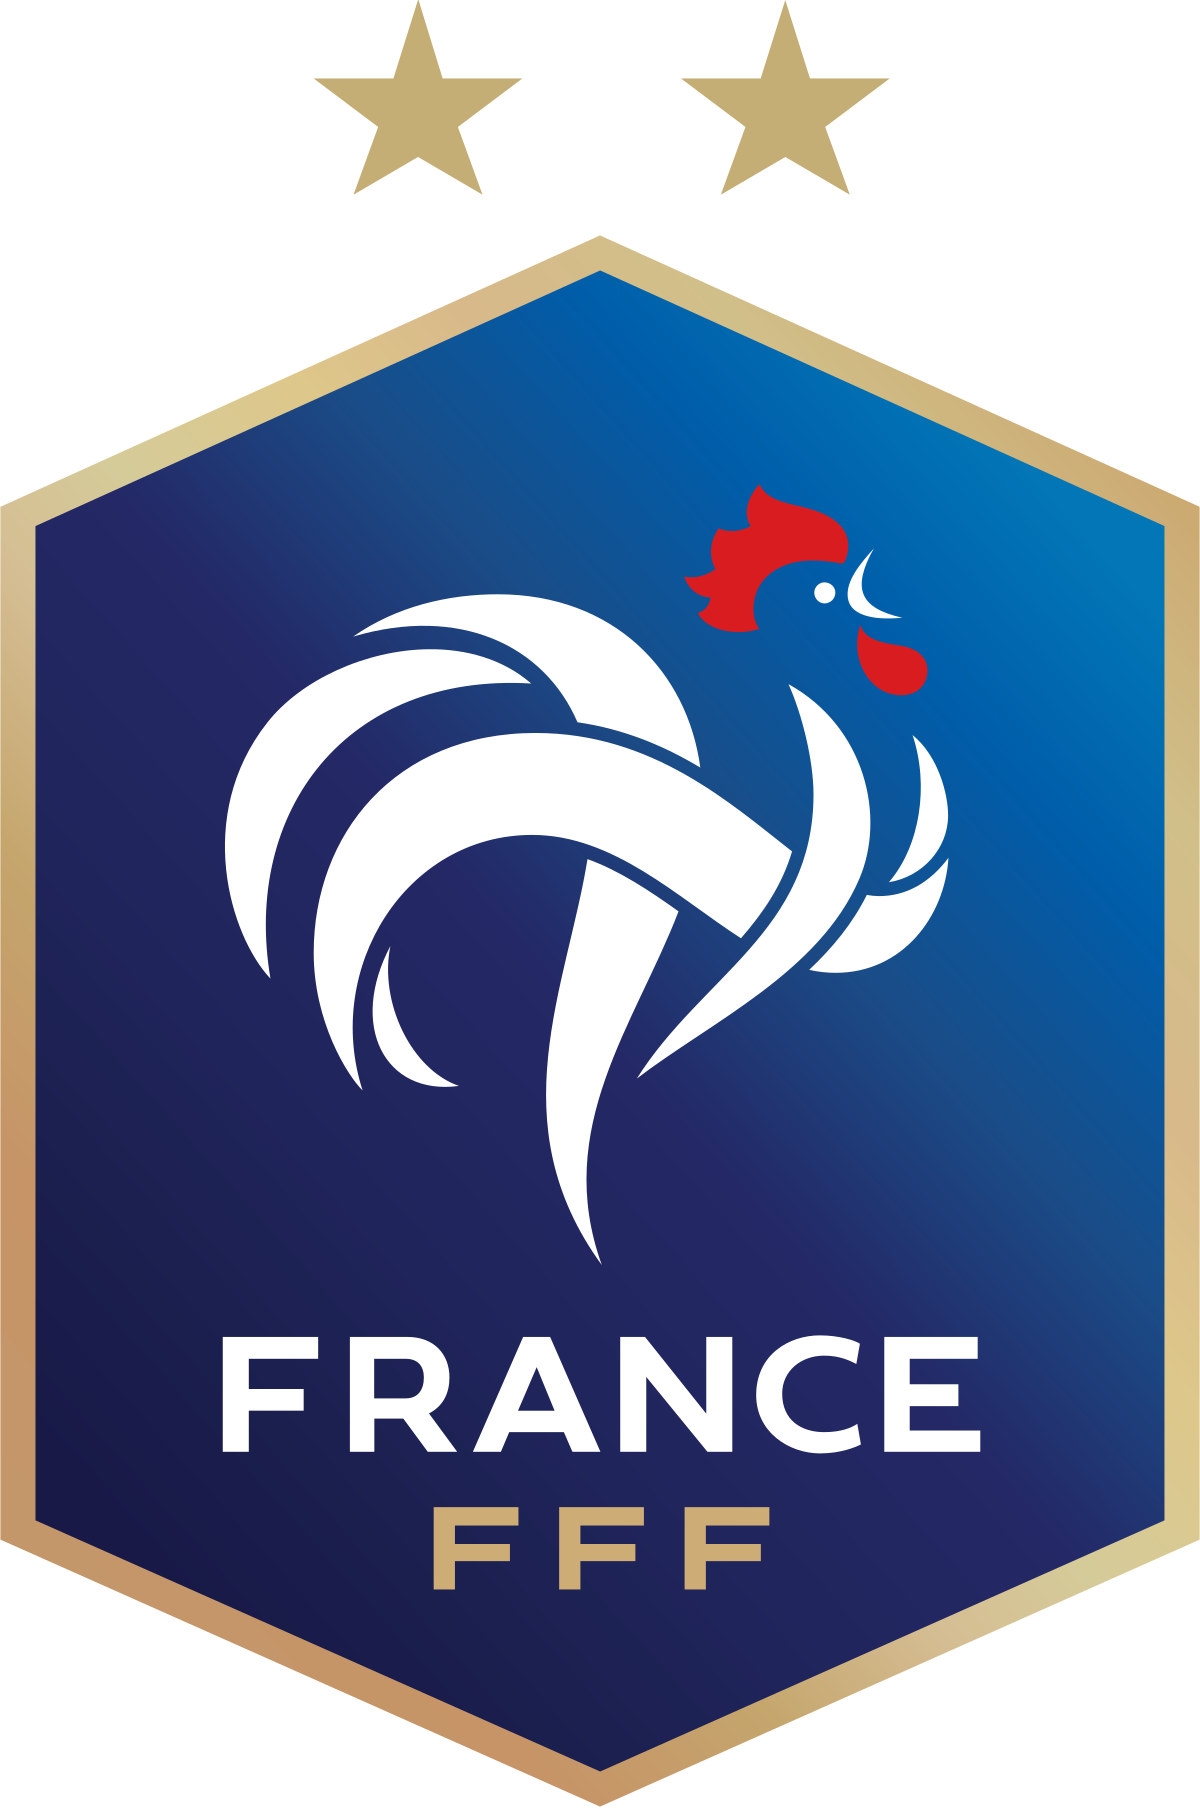 Plus de 5.5 buteurs différents pour l'équipe de France durant la compétition